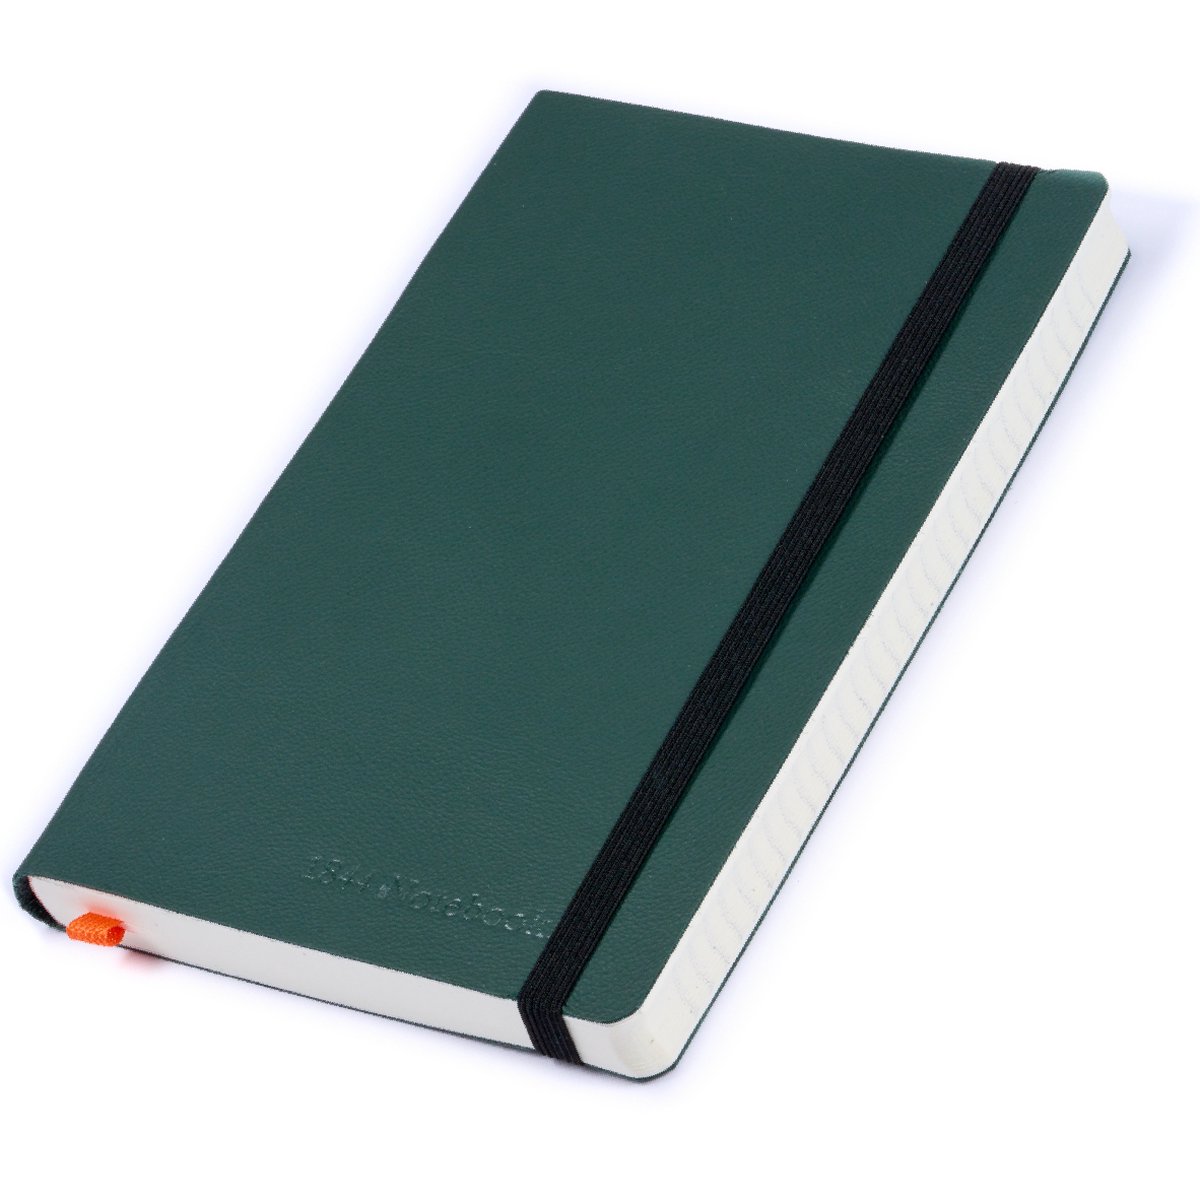 Notitieboek - Notebook A5 - Cadeau voor man - Cadeau voor vrouw - Notitieboekje - Handgemaakt van leer - Notebook - Notitieblok - Forest Green - groen - 1844 Notebooks